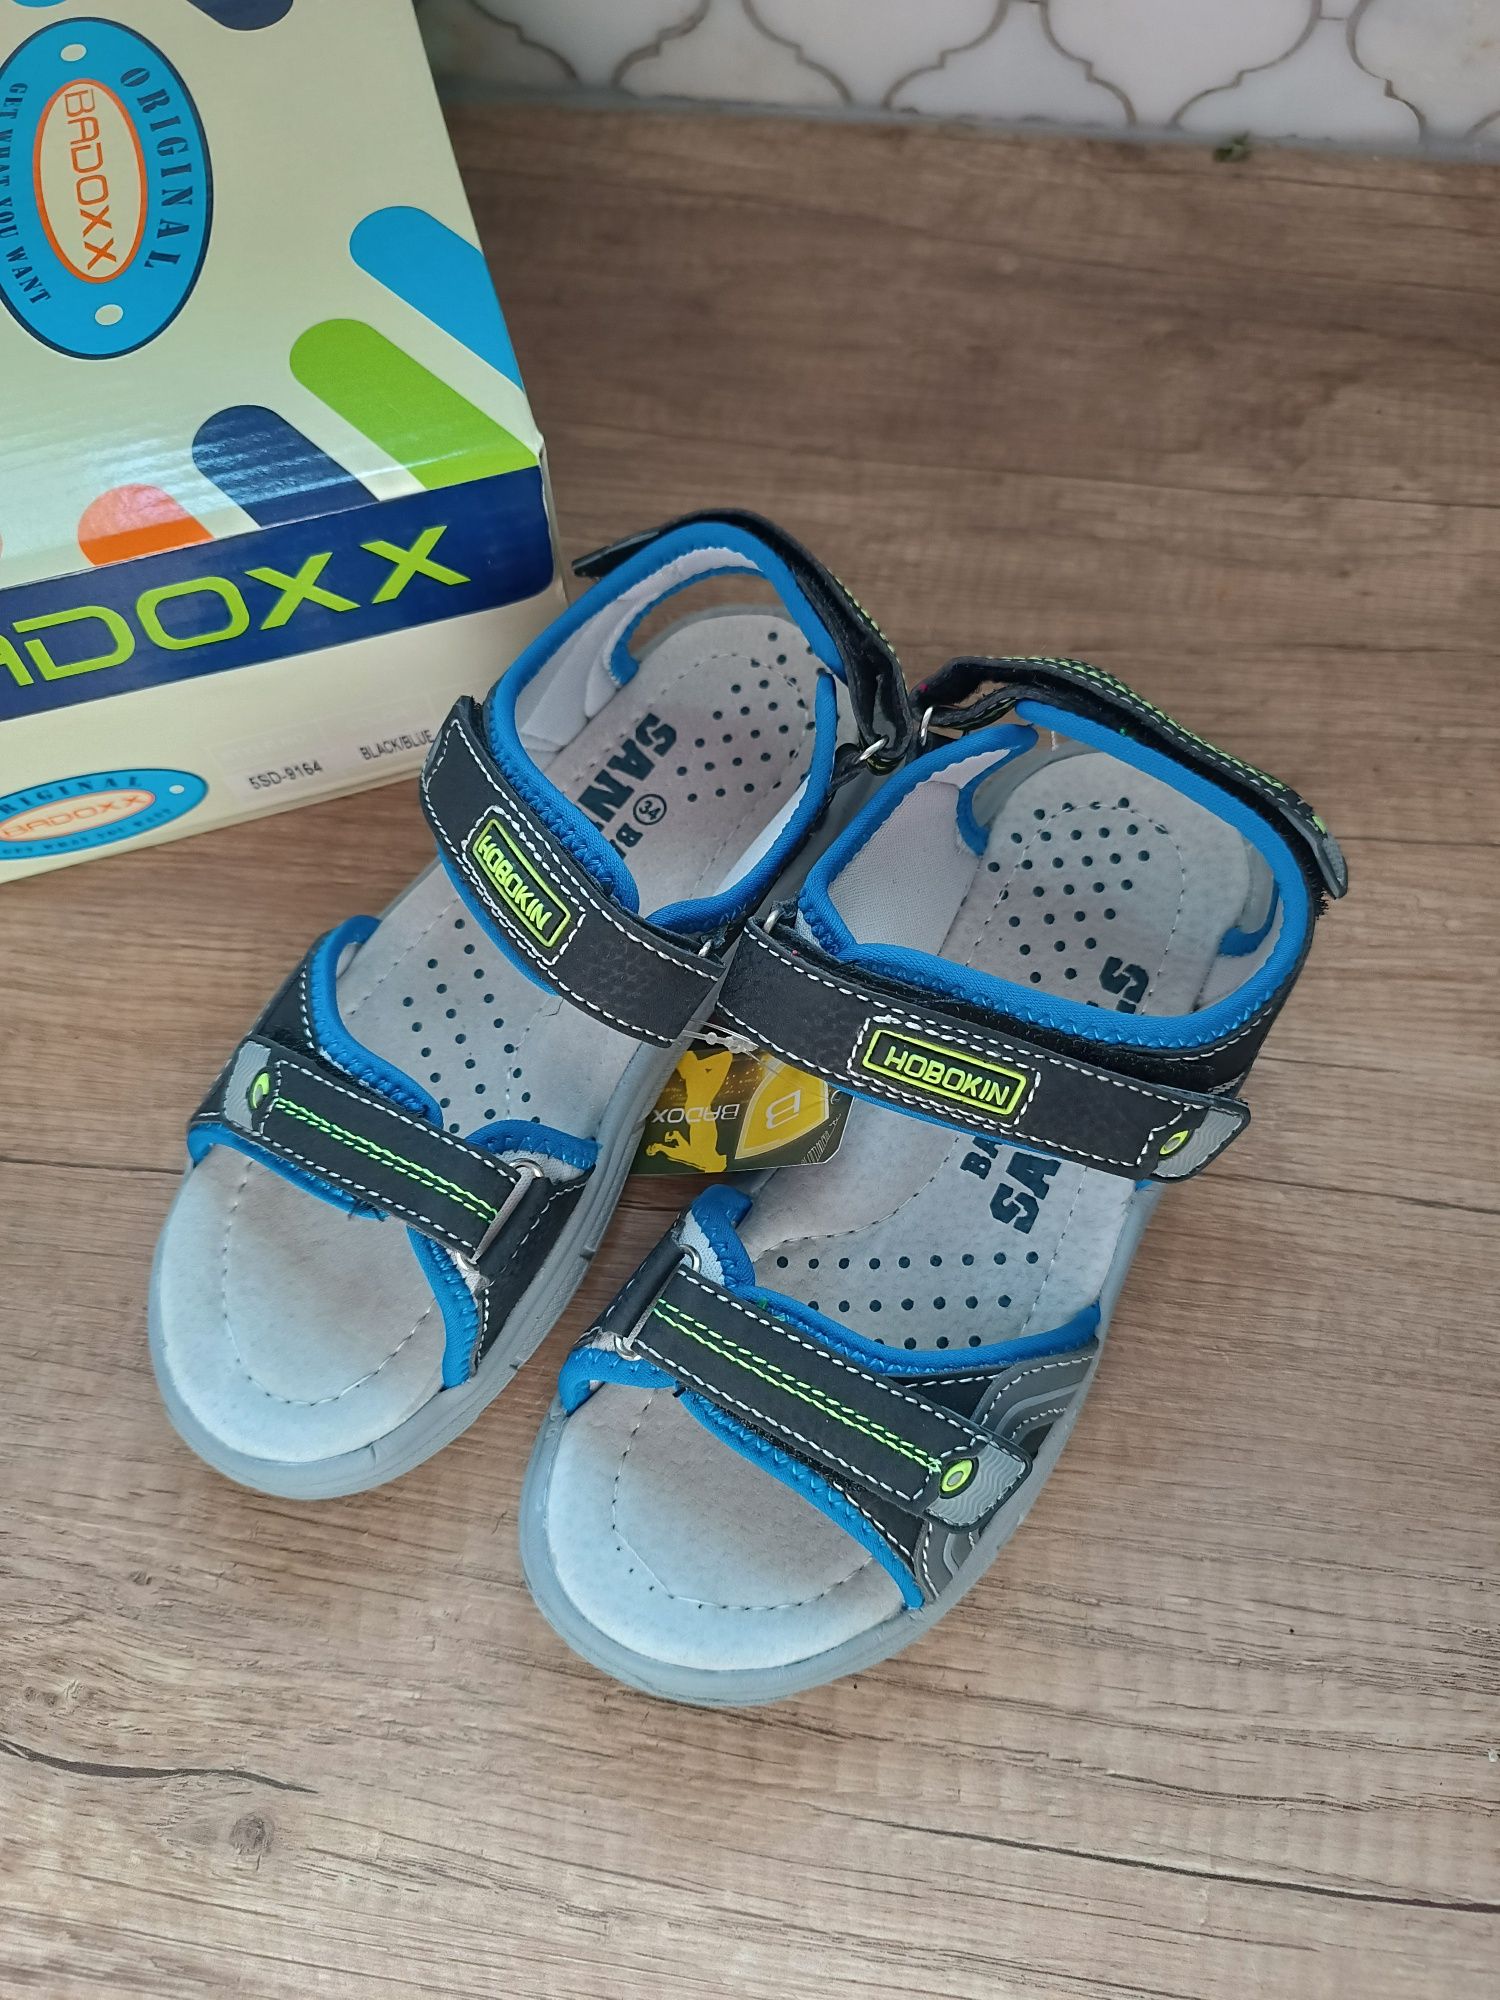 Sandałki chłopięce Badoxx 34 nowe